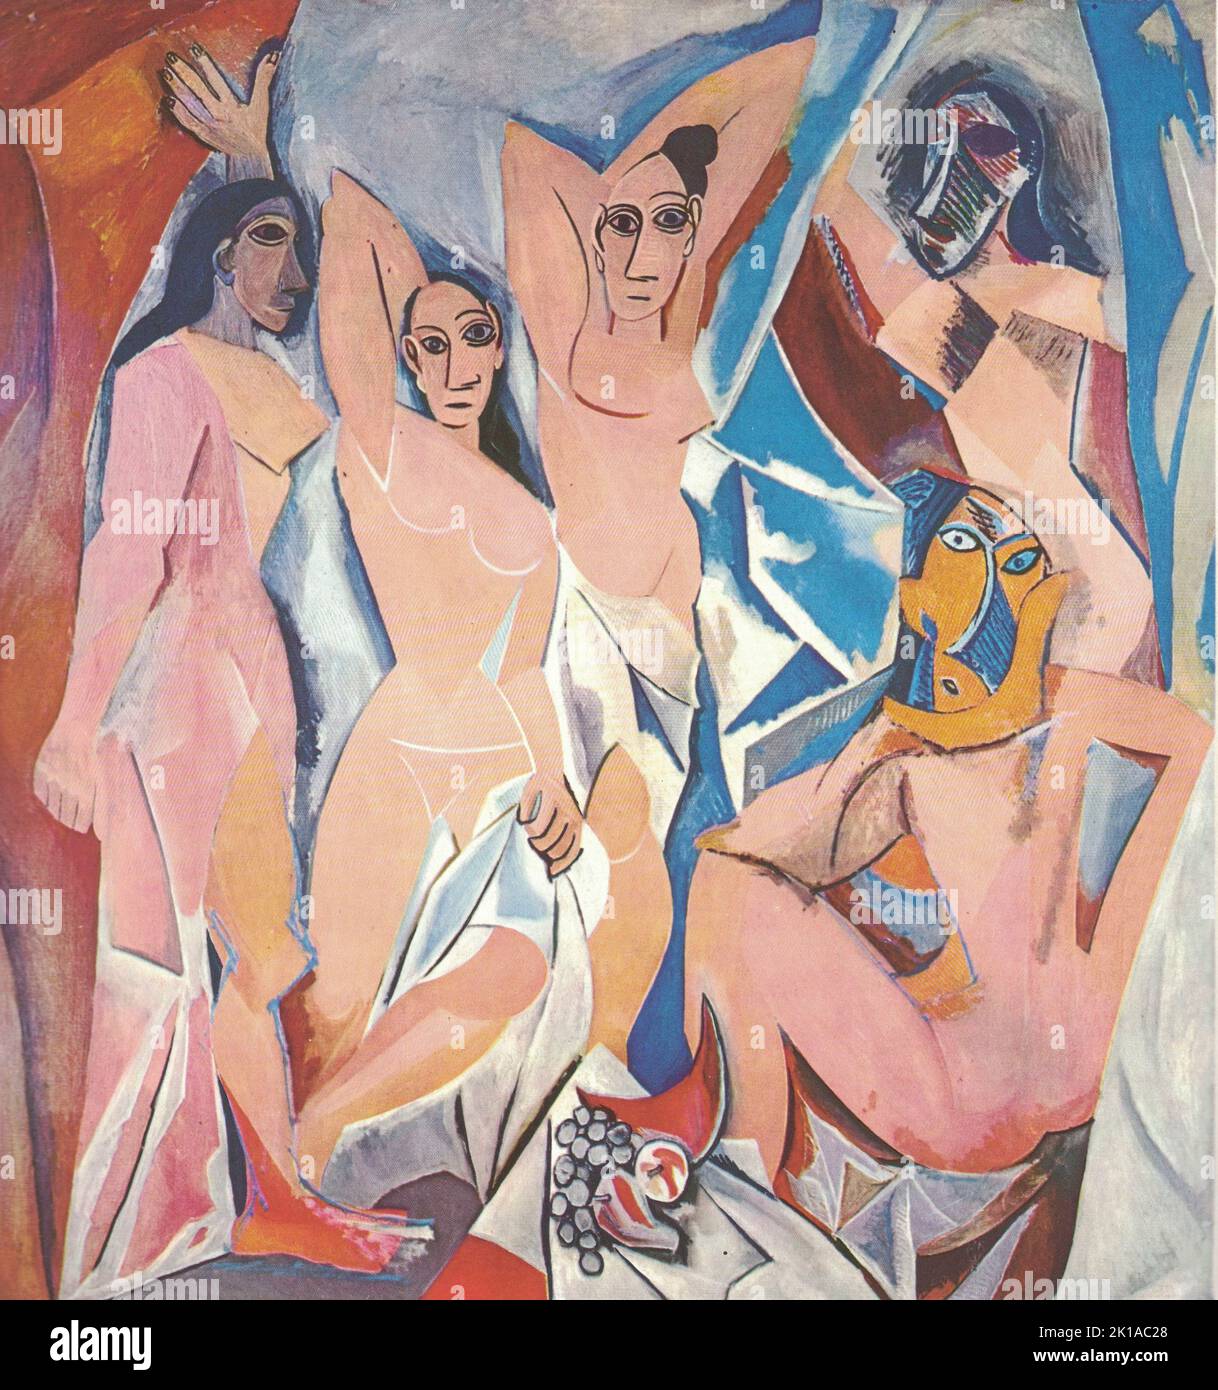 Les jeunes Dames d'Avignon, 1907. Peinture à l'huile par Pablo Picasso. Pablo Ruiz Picasso (25 octobre 1881 – 8 avril 1973) est un peintre espagnol, sculpteur, graveur, céramiste et concepteur de théâtre qui a passé la plus grande partie de sa vie adulte en France. Considéré comme l'un des artistes les plus influents du 20th siècle, il est connu pour avoir co-fondé le mouvement Cubiste, l'invention de la sculpture construite, la co-invention du collage, et pour la grande variété de styles qu'il a aidé à développer et explorer. Parmi ses œuvres les plus célèbres figurent le proto-Cubiste les Demoiselles d'Avignon (1907). Banque D'Images